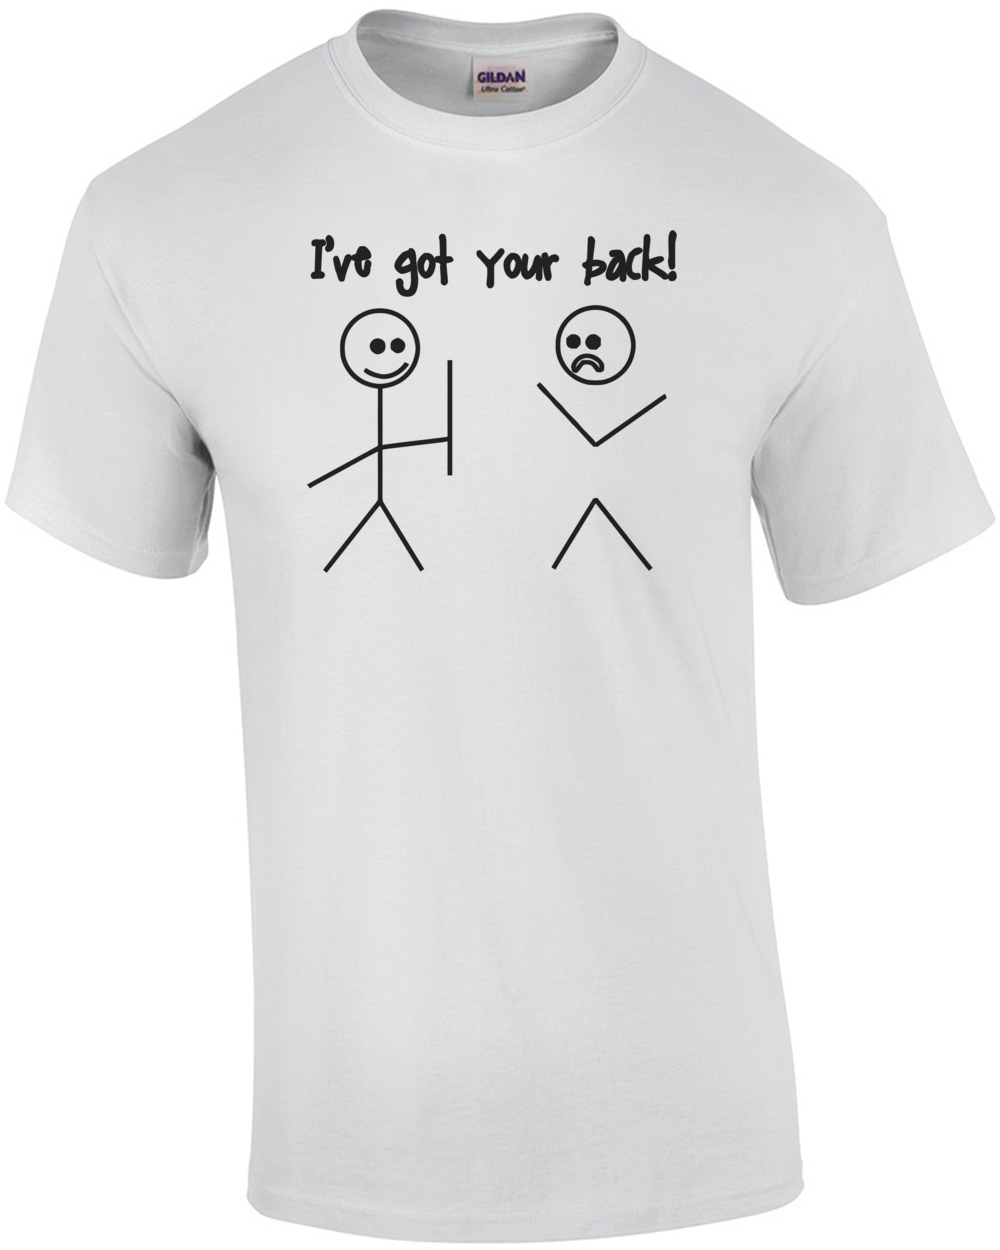 I Ve Got Your Back Shirt Ebay